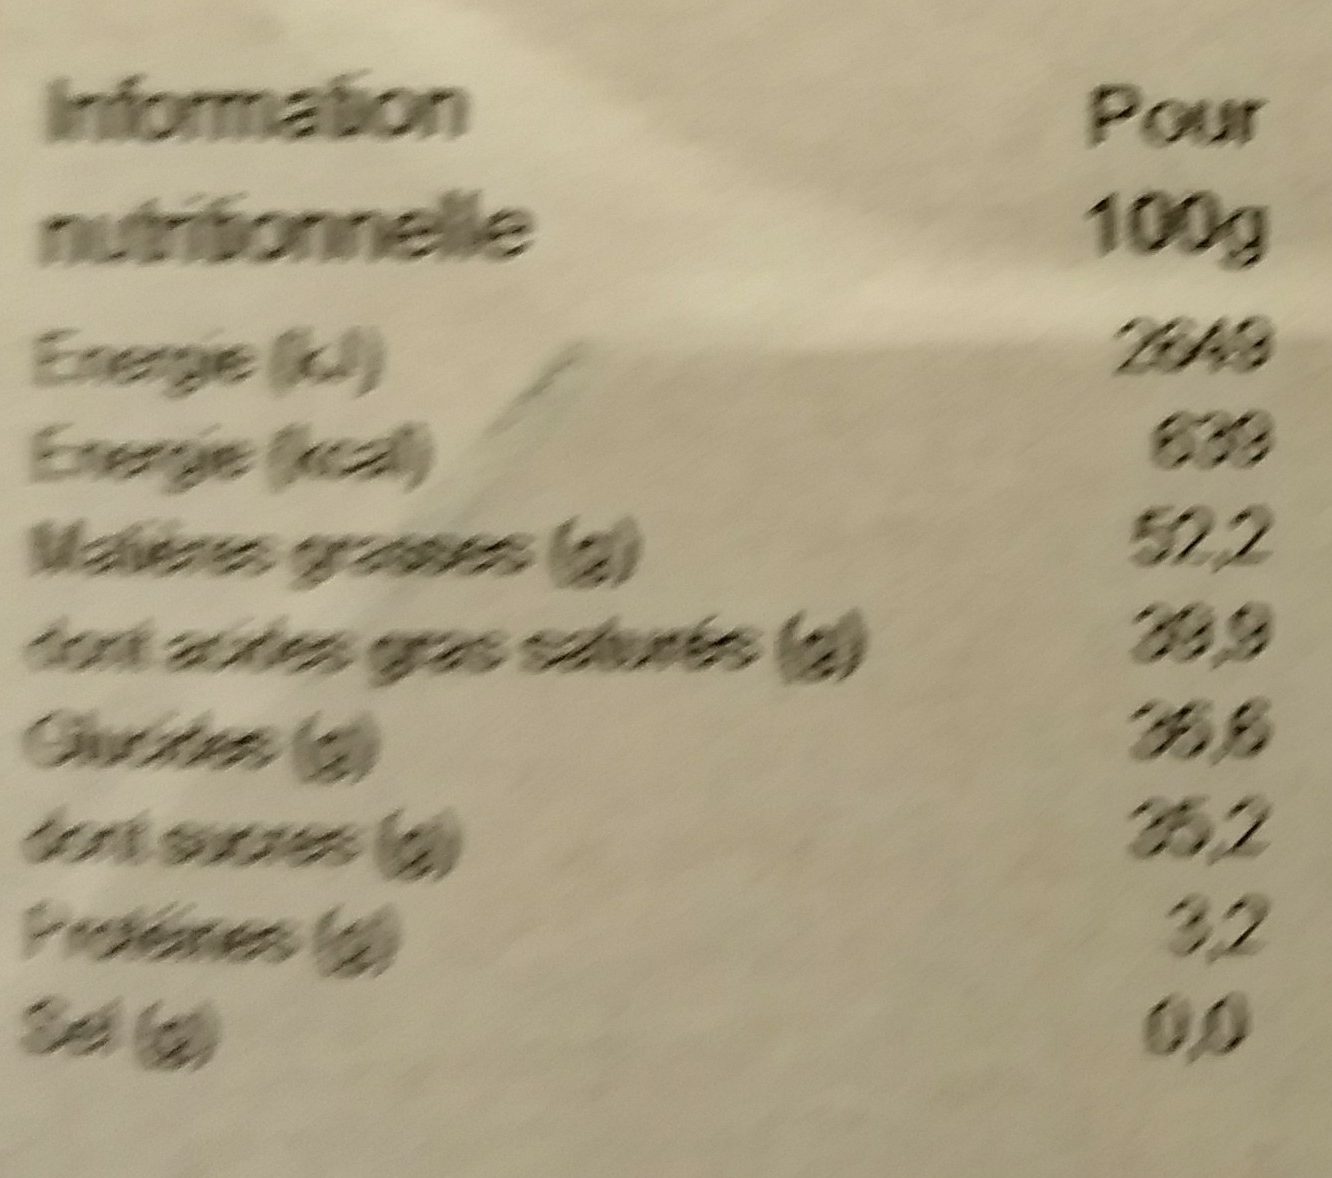 J'adore truffe fantaisie Bio max - Voedingswaarden - fr